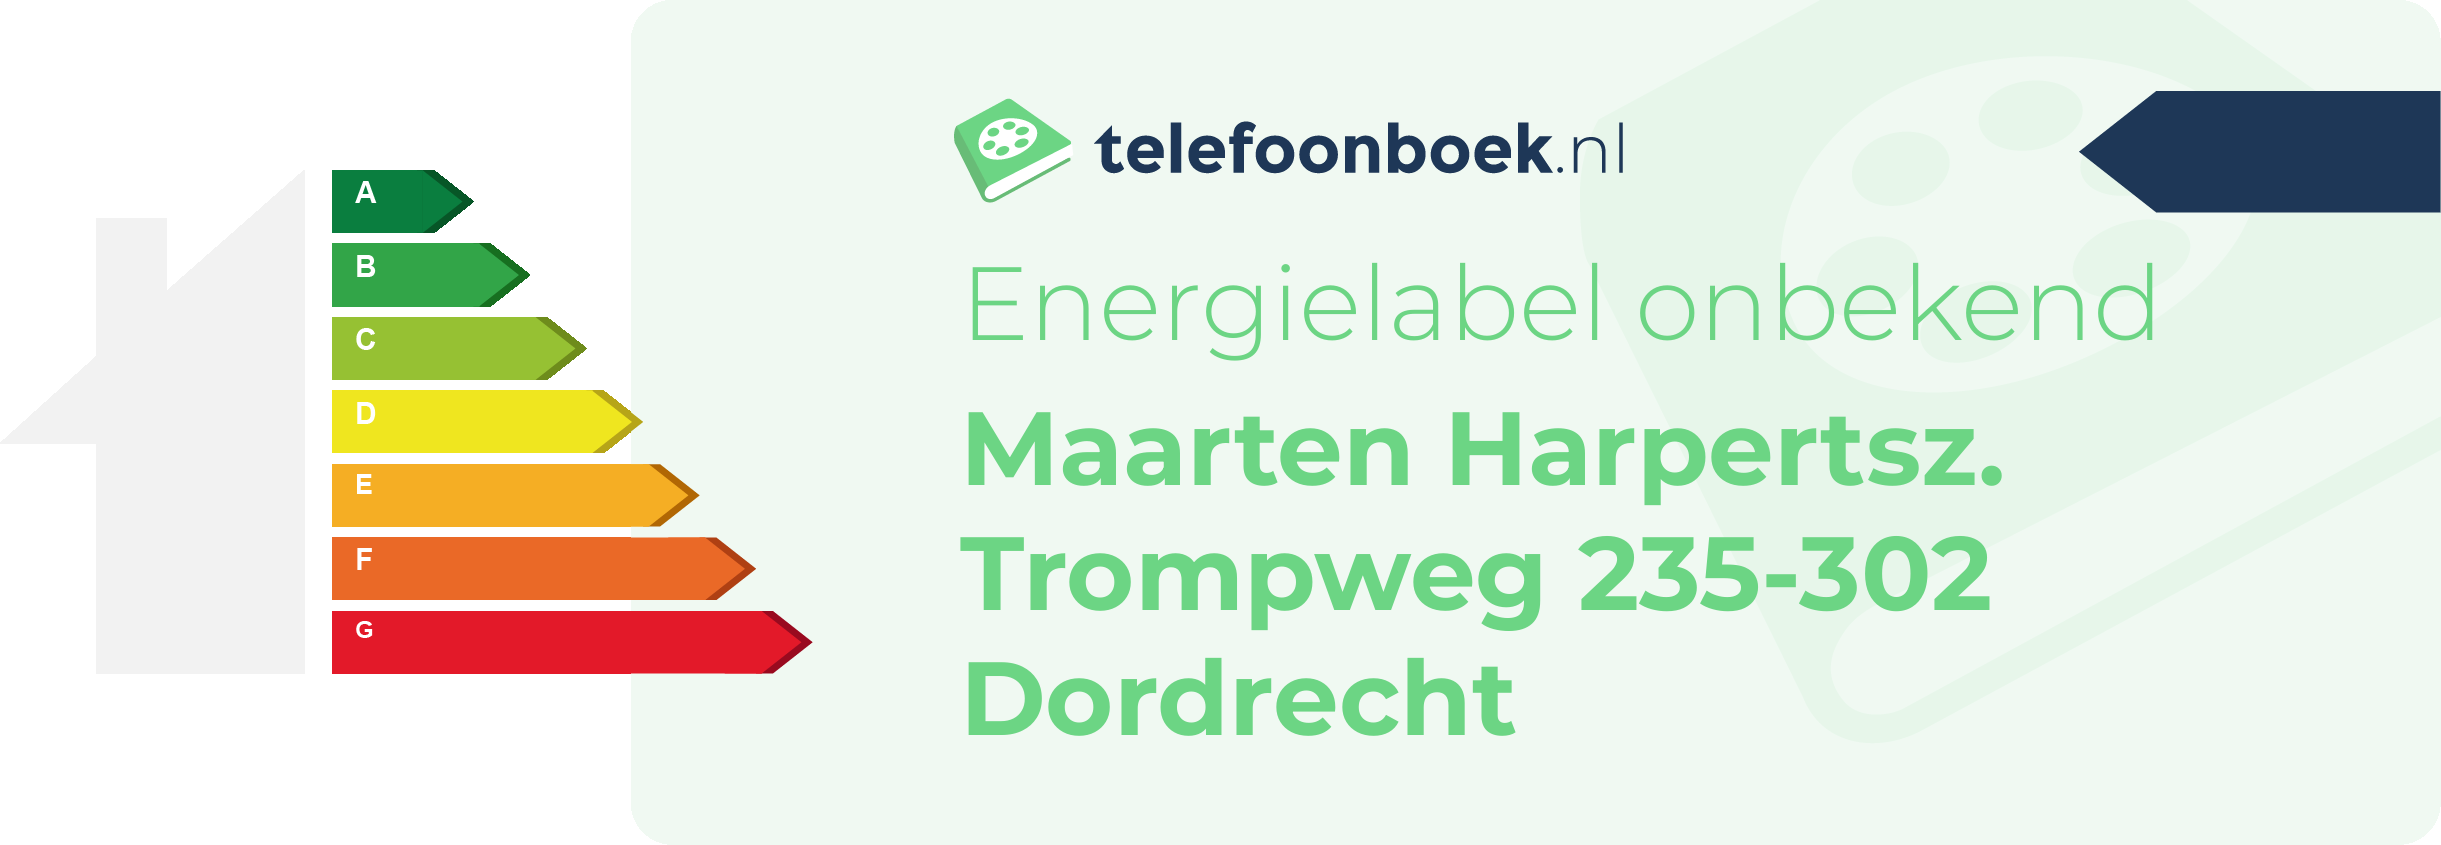 Energielabel Maarten Harpertsz. Trompweg 235-302 Dordrecht